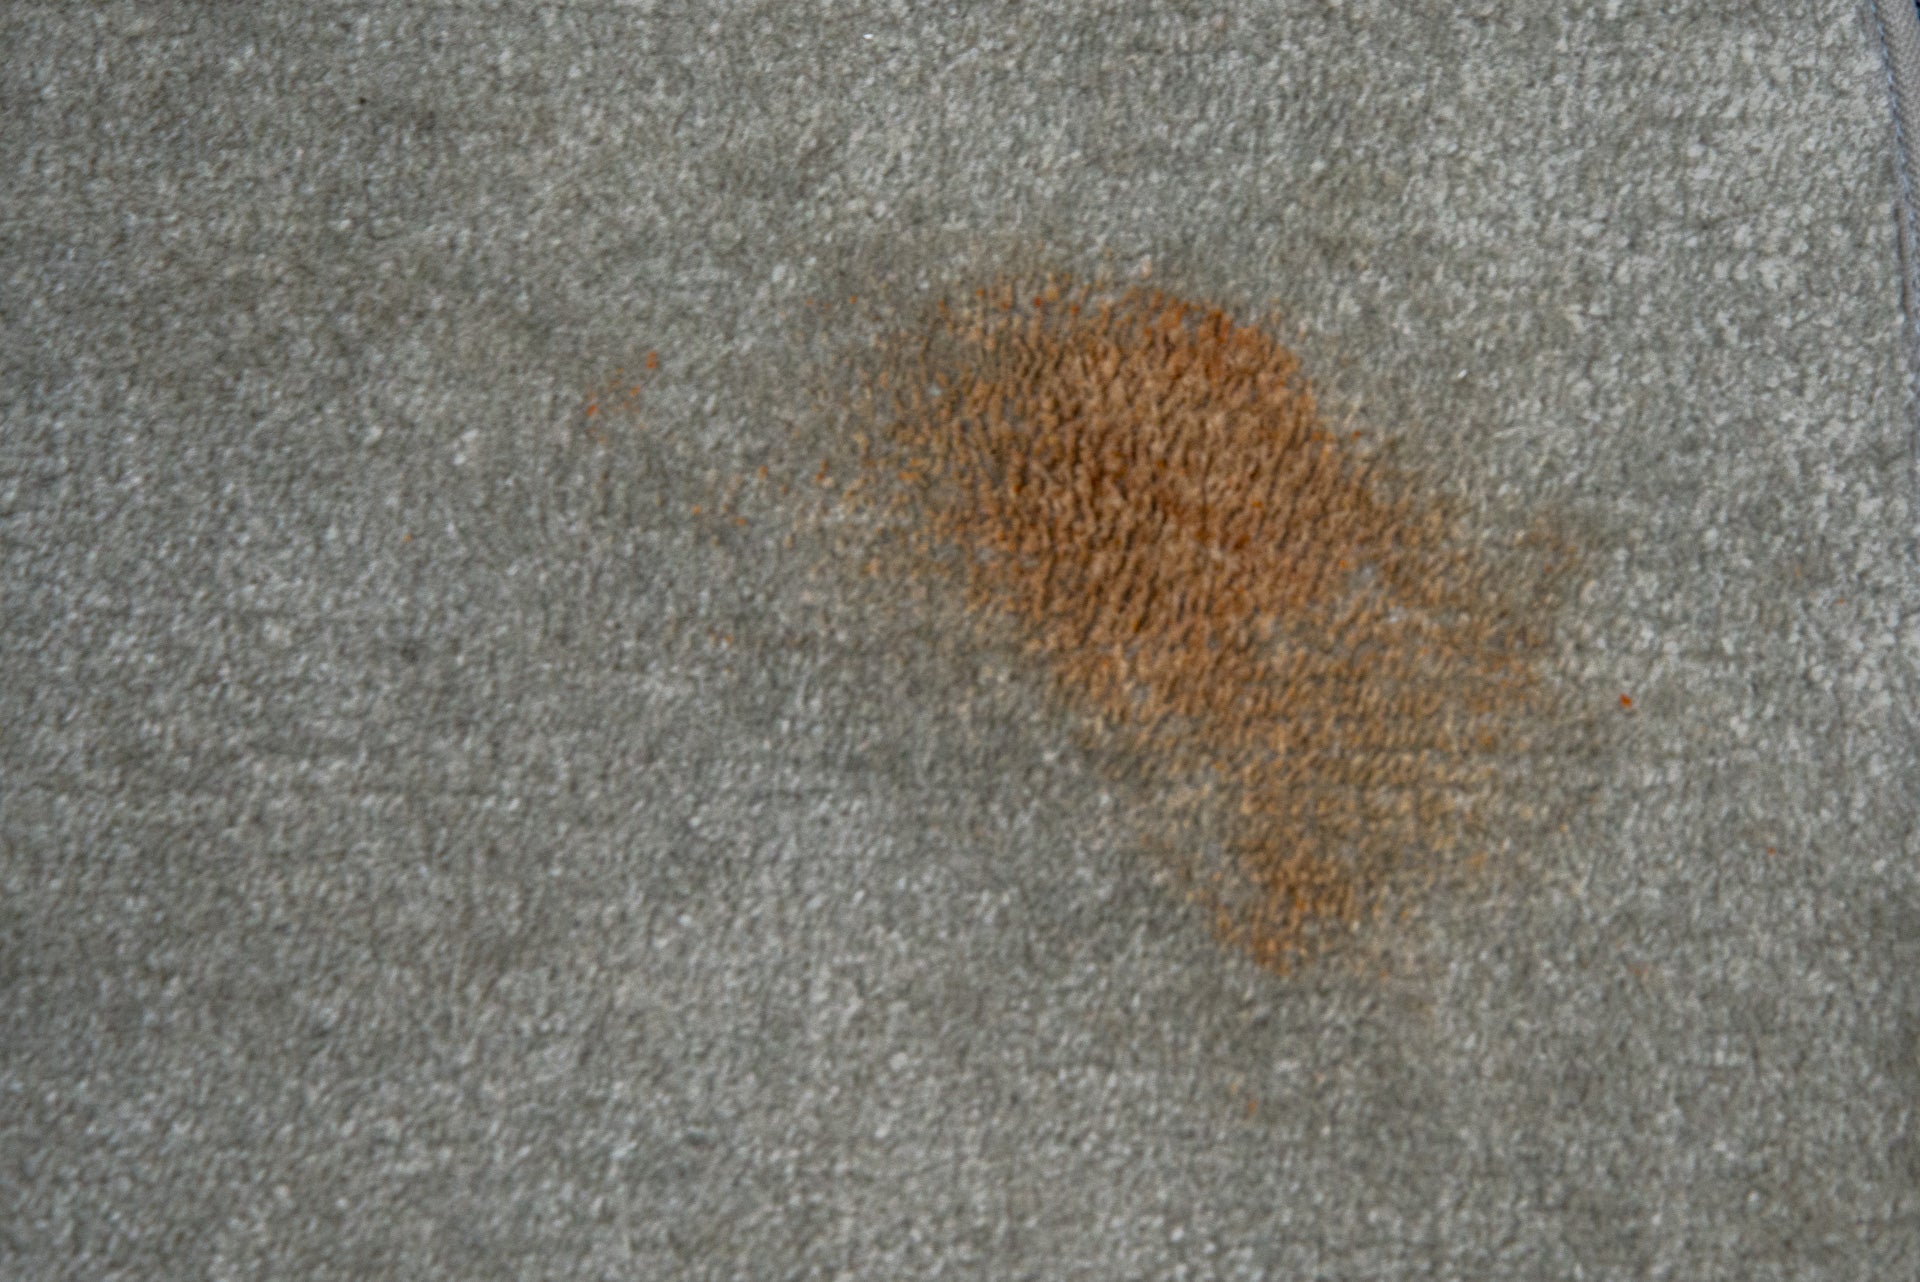 Una mancha de salsa de tomate en una alfombra